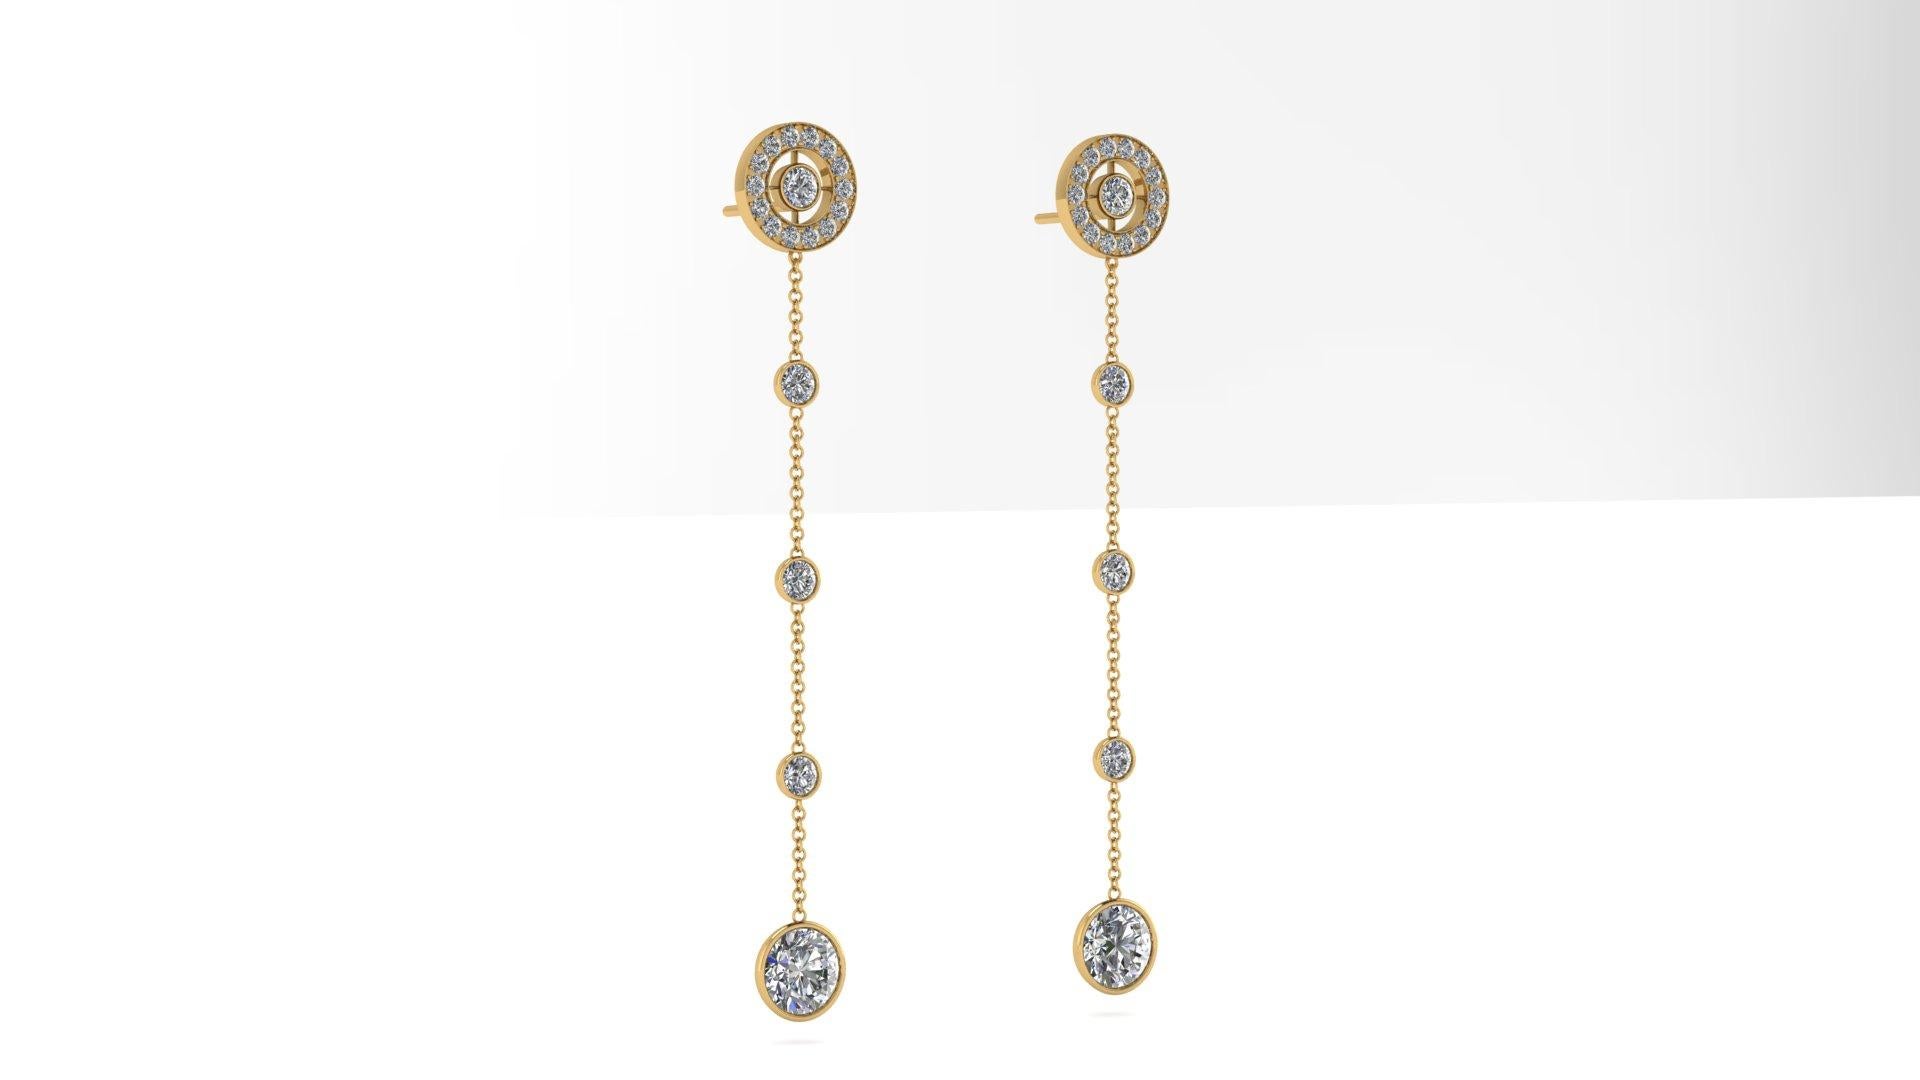 3,25 Karat Diamanten baumelnden Ohrringe in 18k Gelbgold gemacht.
Die Länge der Ohrringe ist 66 mm, die unteren zwei baumelnden jungen Diamanten, sind jeweils 1 Karat, H Farbe, VS1-VS2 Klarheit.
Das Gesamtkaratgewicht der mittleren und oberen